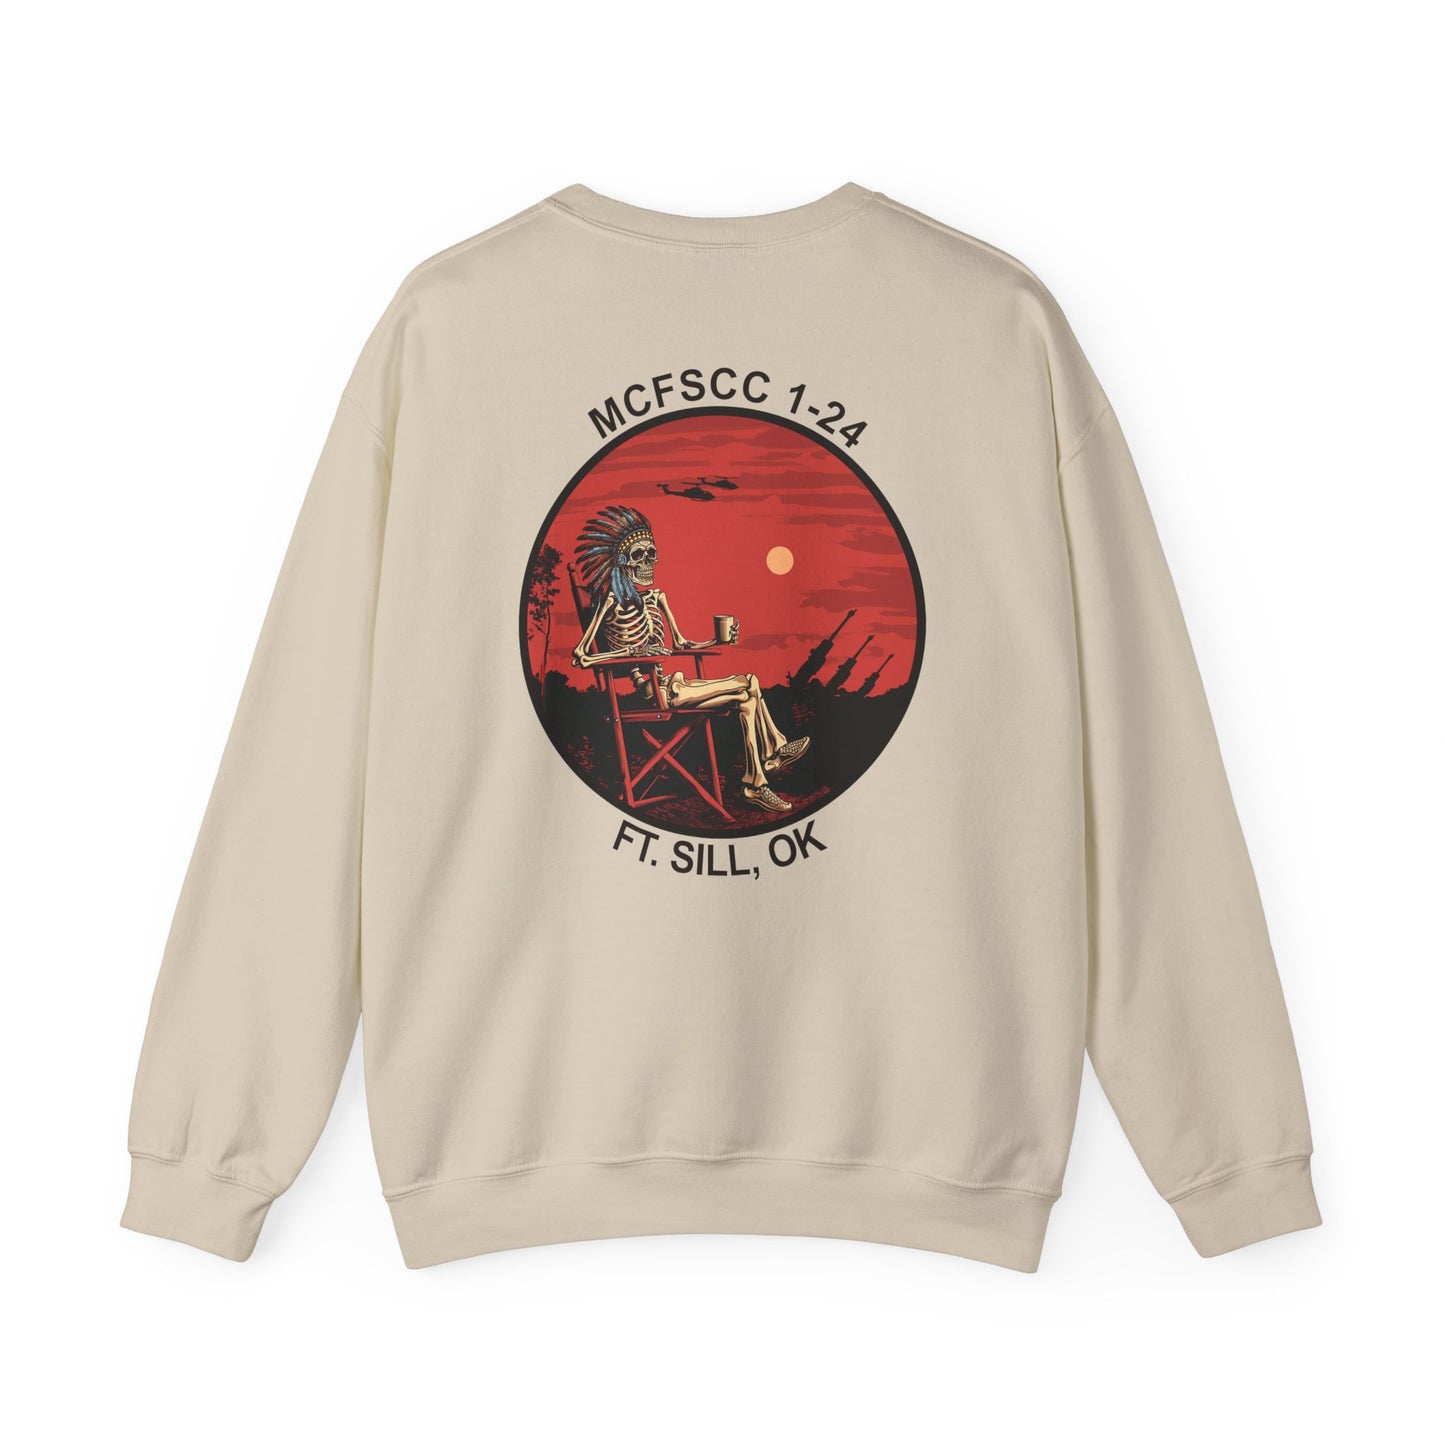 MCFSCC 1-24 Sweatshirt